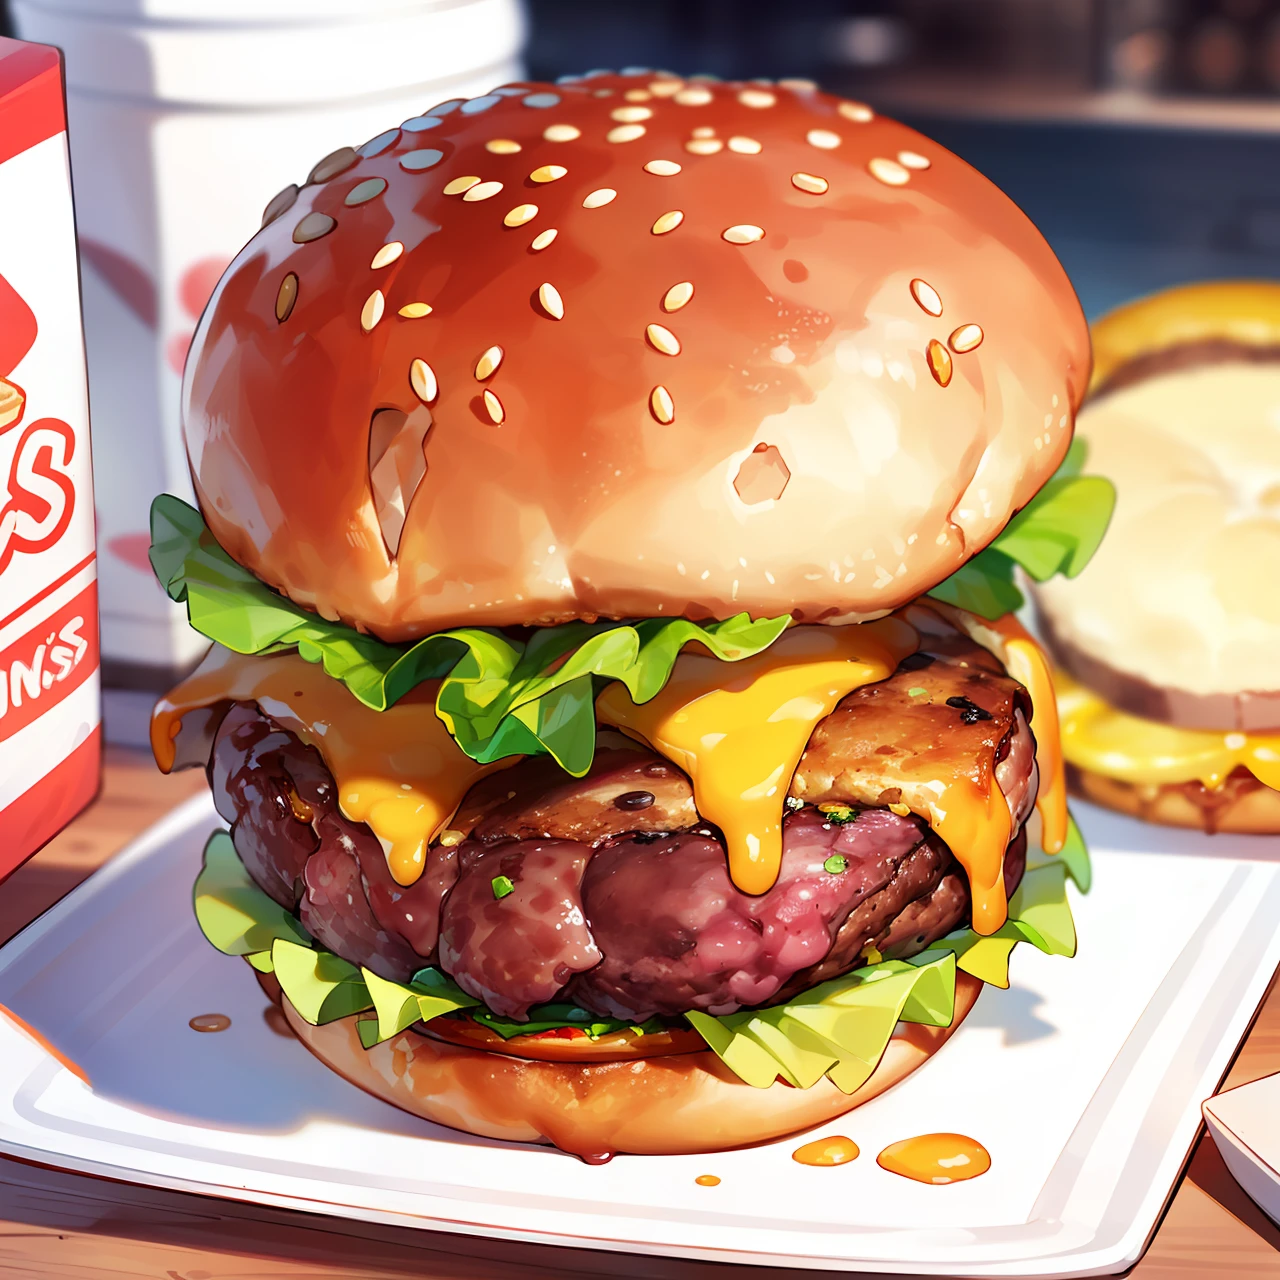 有一家汉堡店叫 Viking’s Burger. 有150克的手工汉堡，超级多汁. 零食照片让人垂涎欲滴.